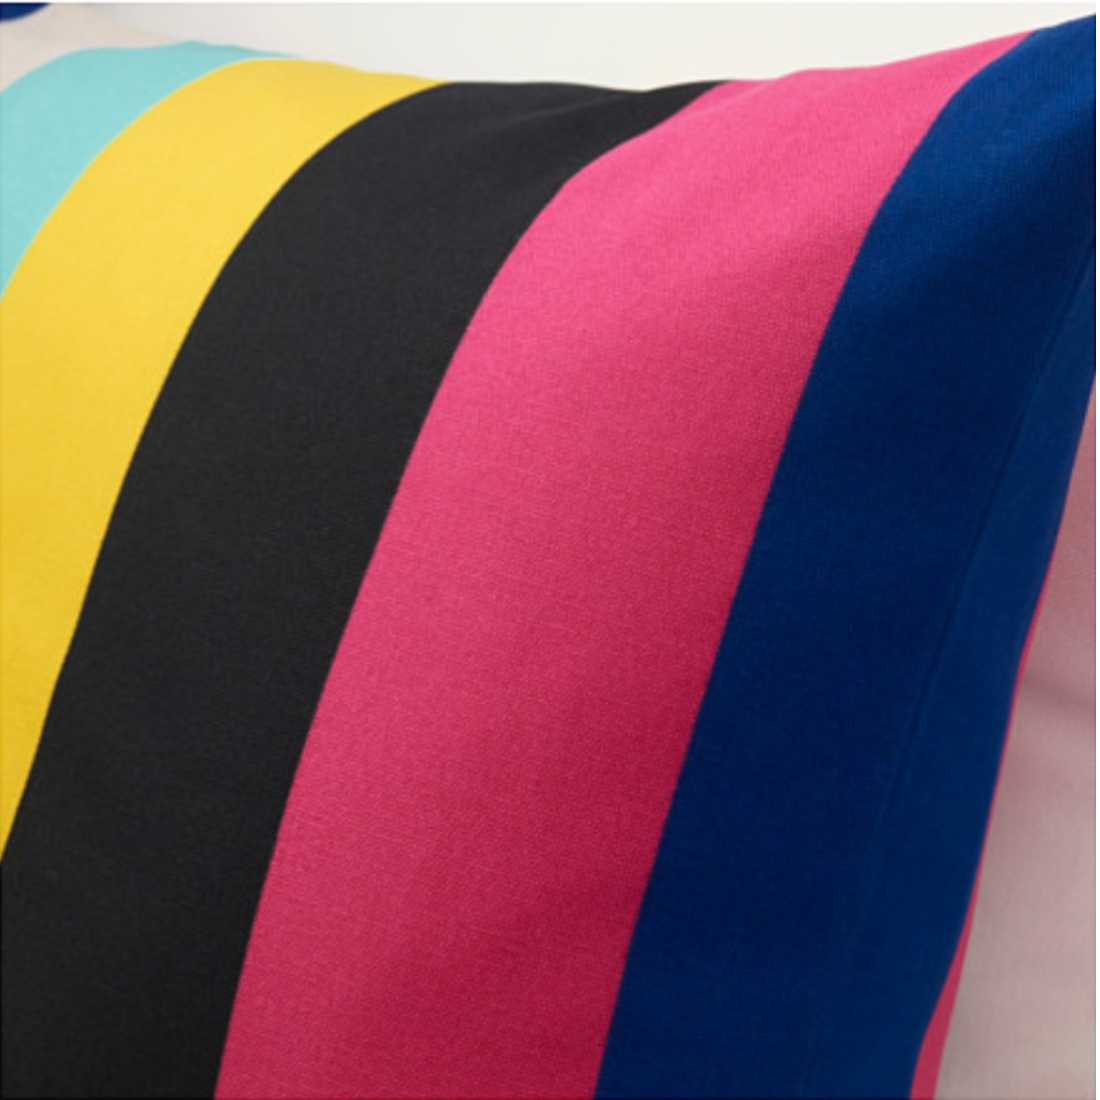 Multicolored Striped Cushion